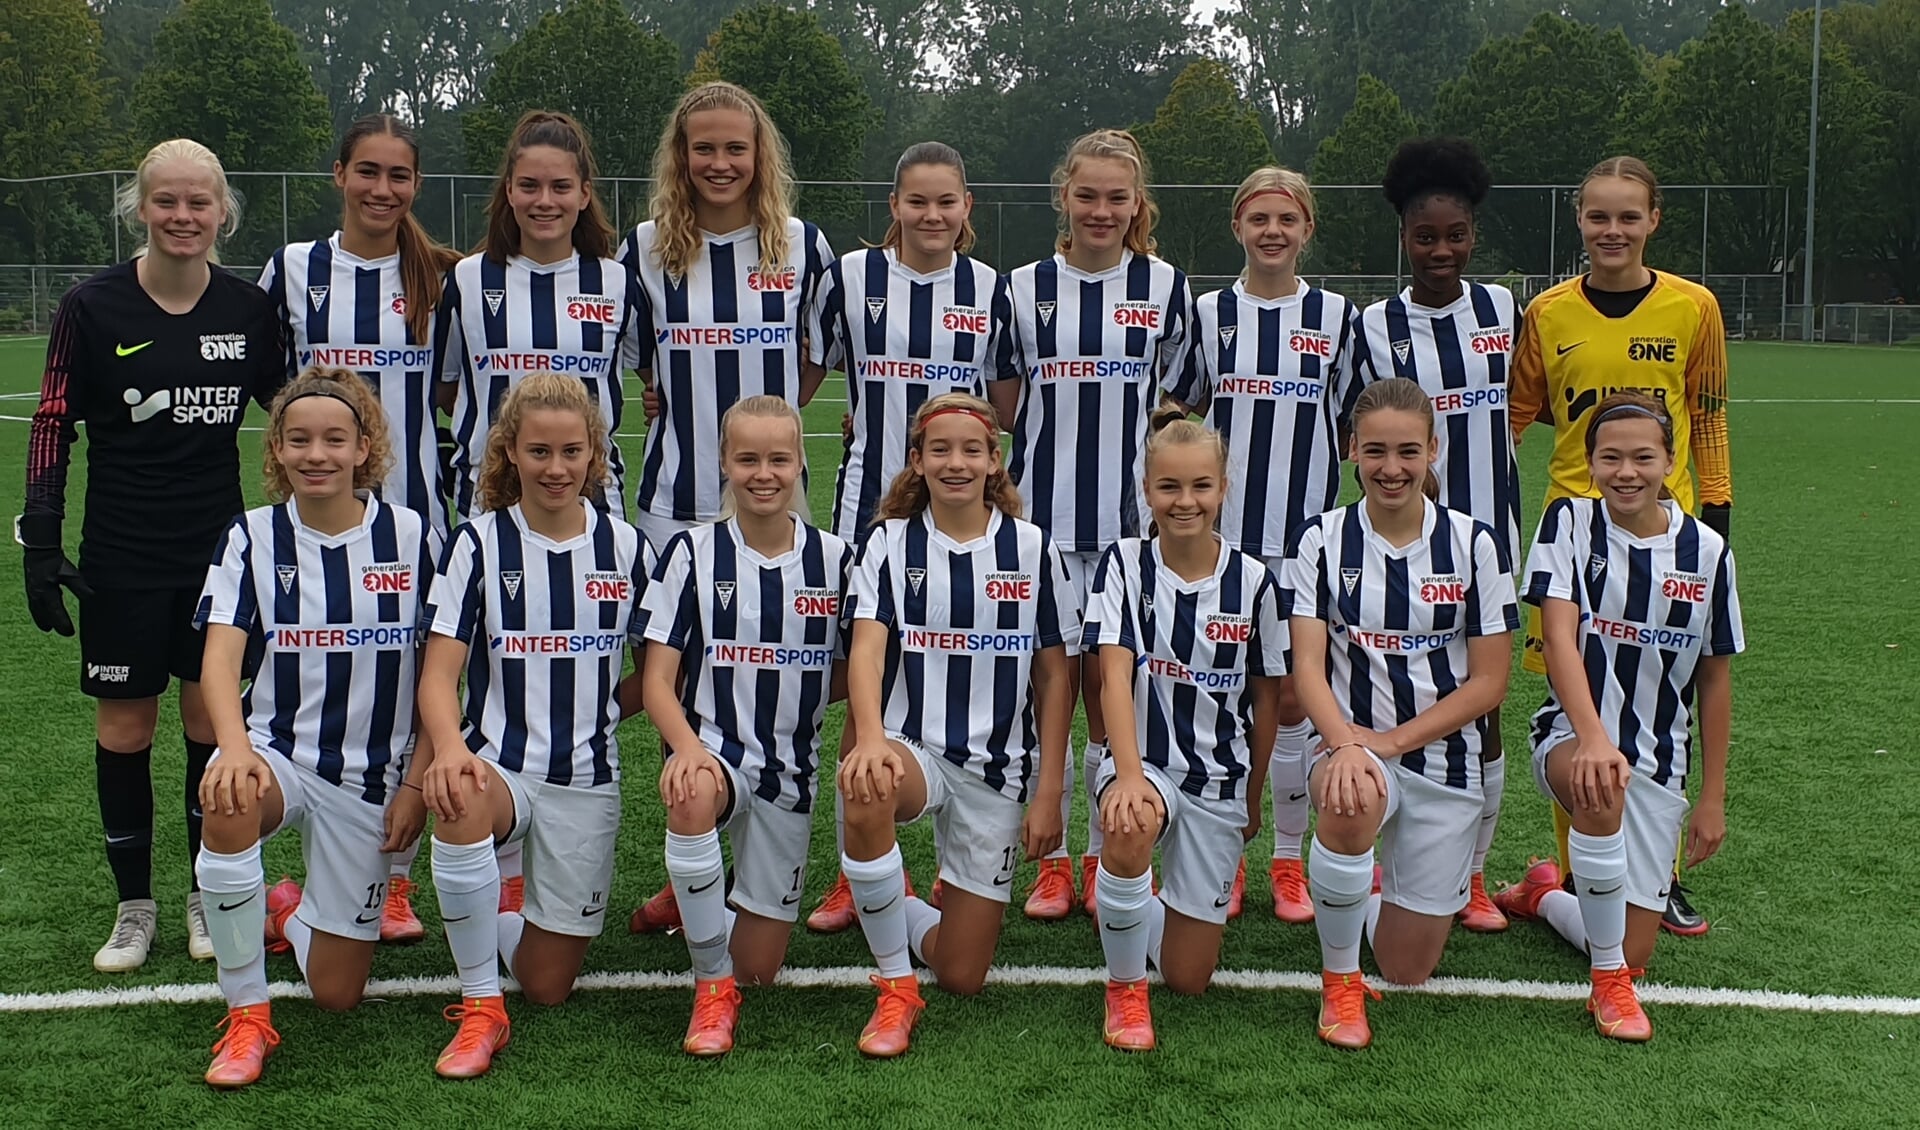 Hoofddorpse voetbalsters uniek meidenteam op weg naar Eredivisie - | de regio Hoofddorp